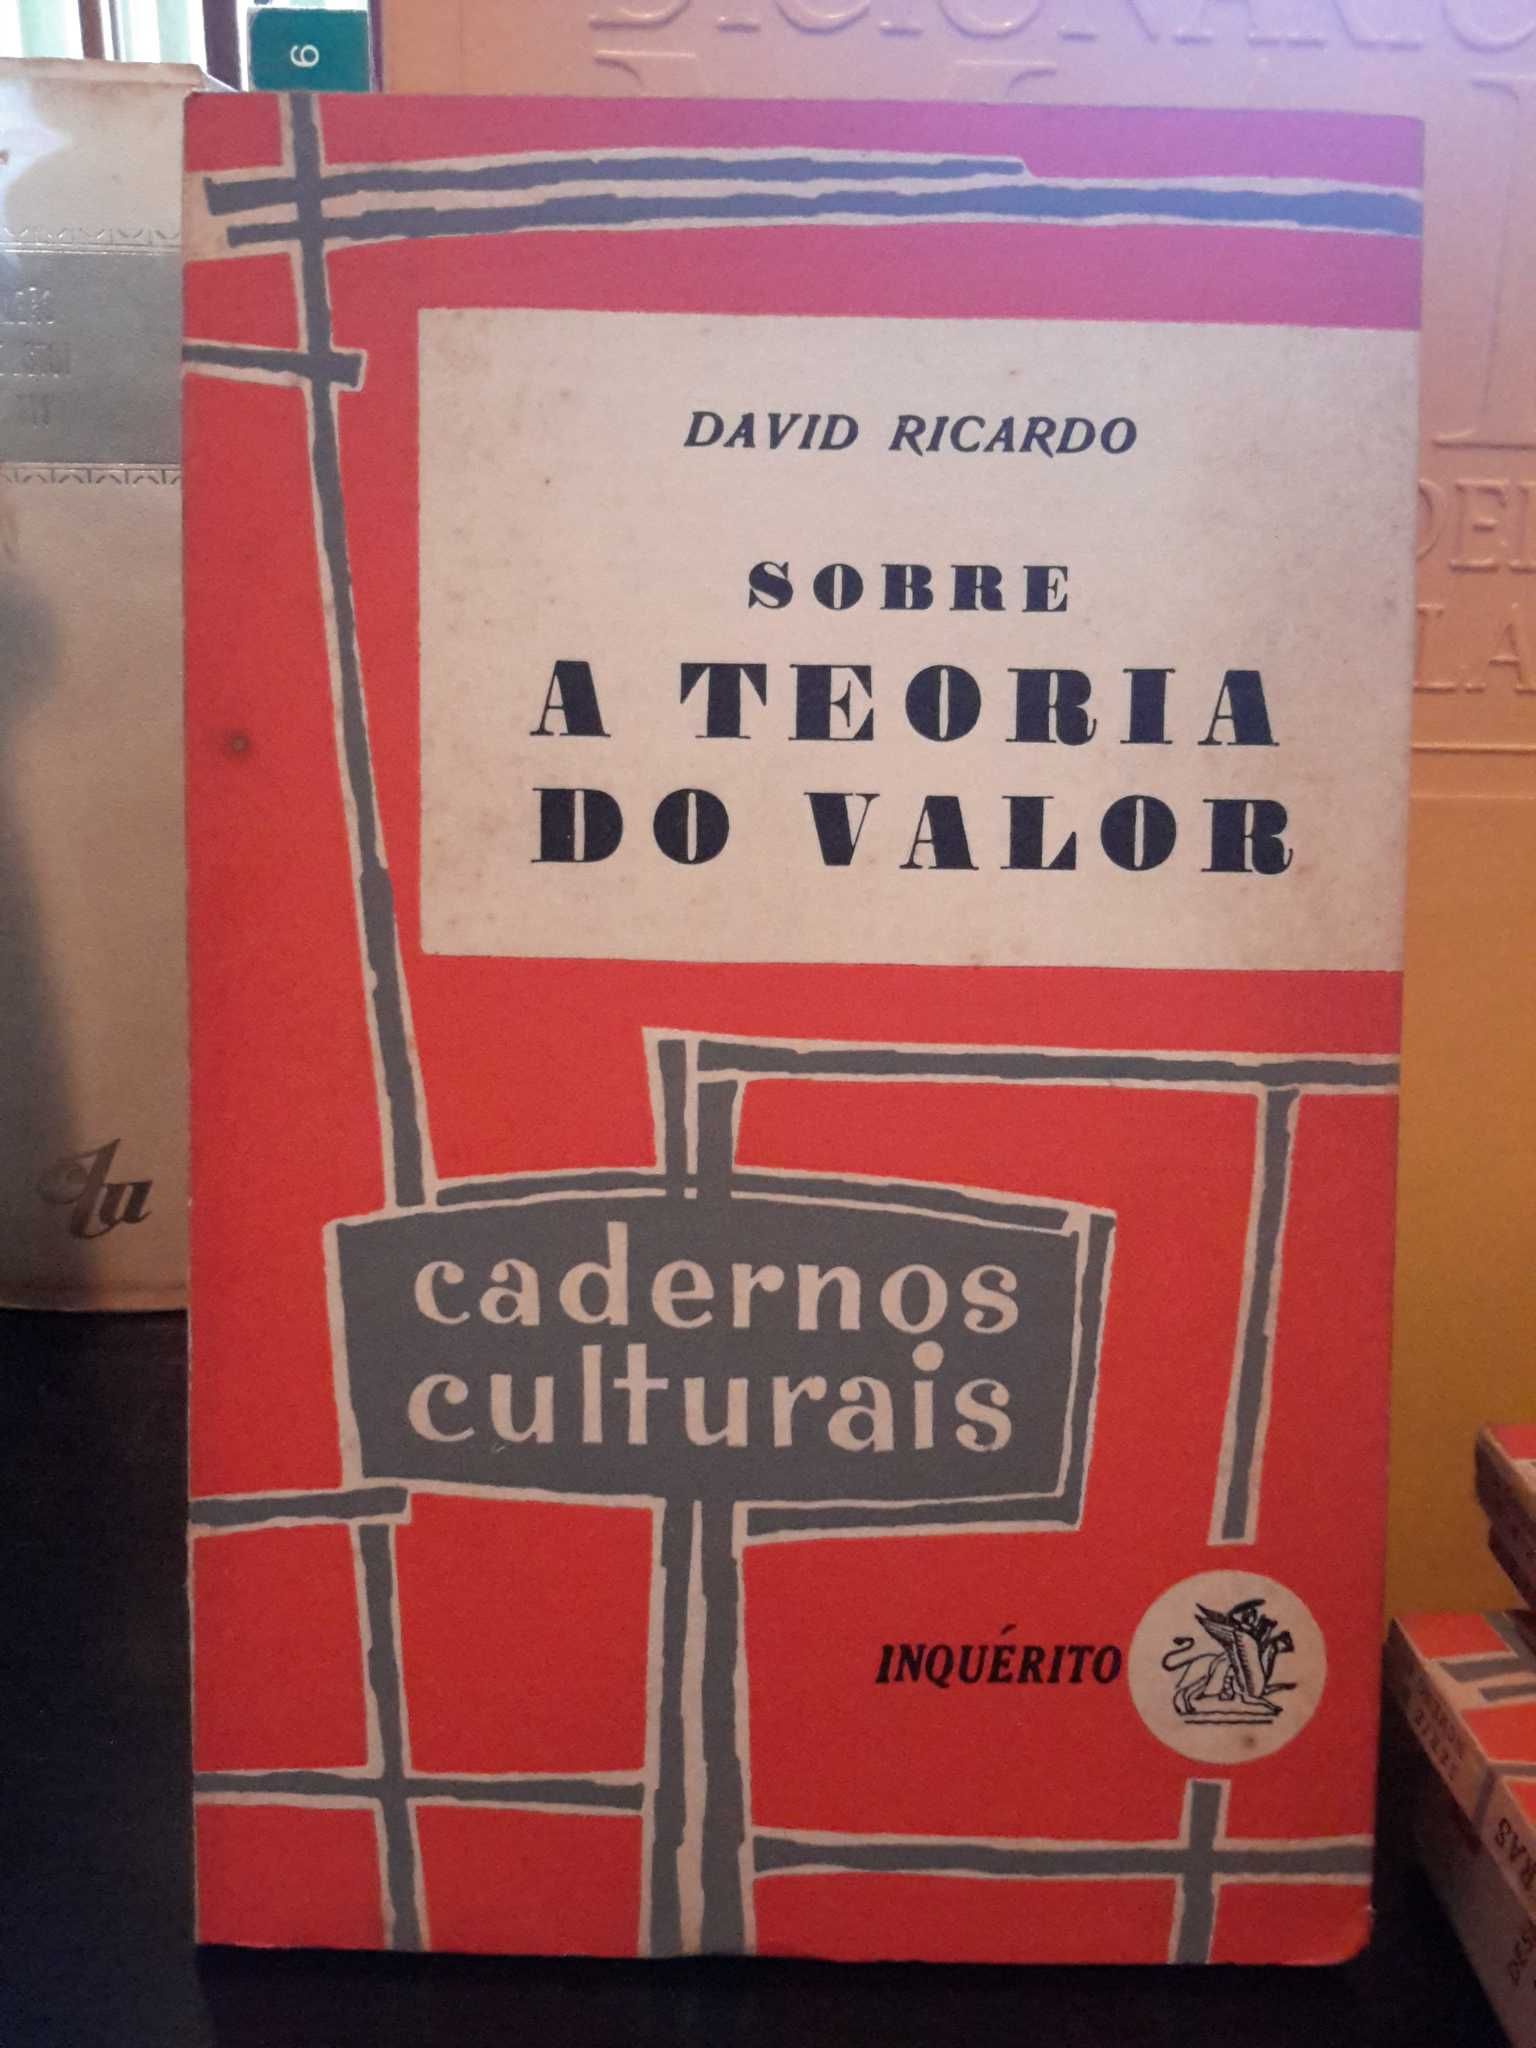 David Ricardo - Sobre a Teoria do Valor